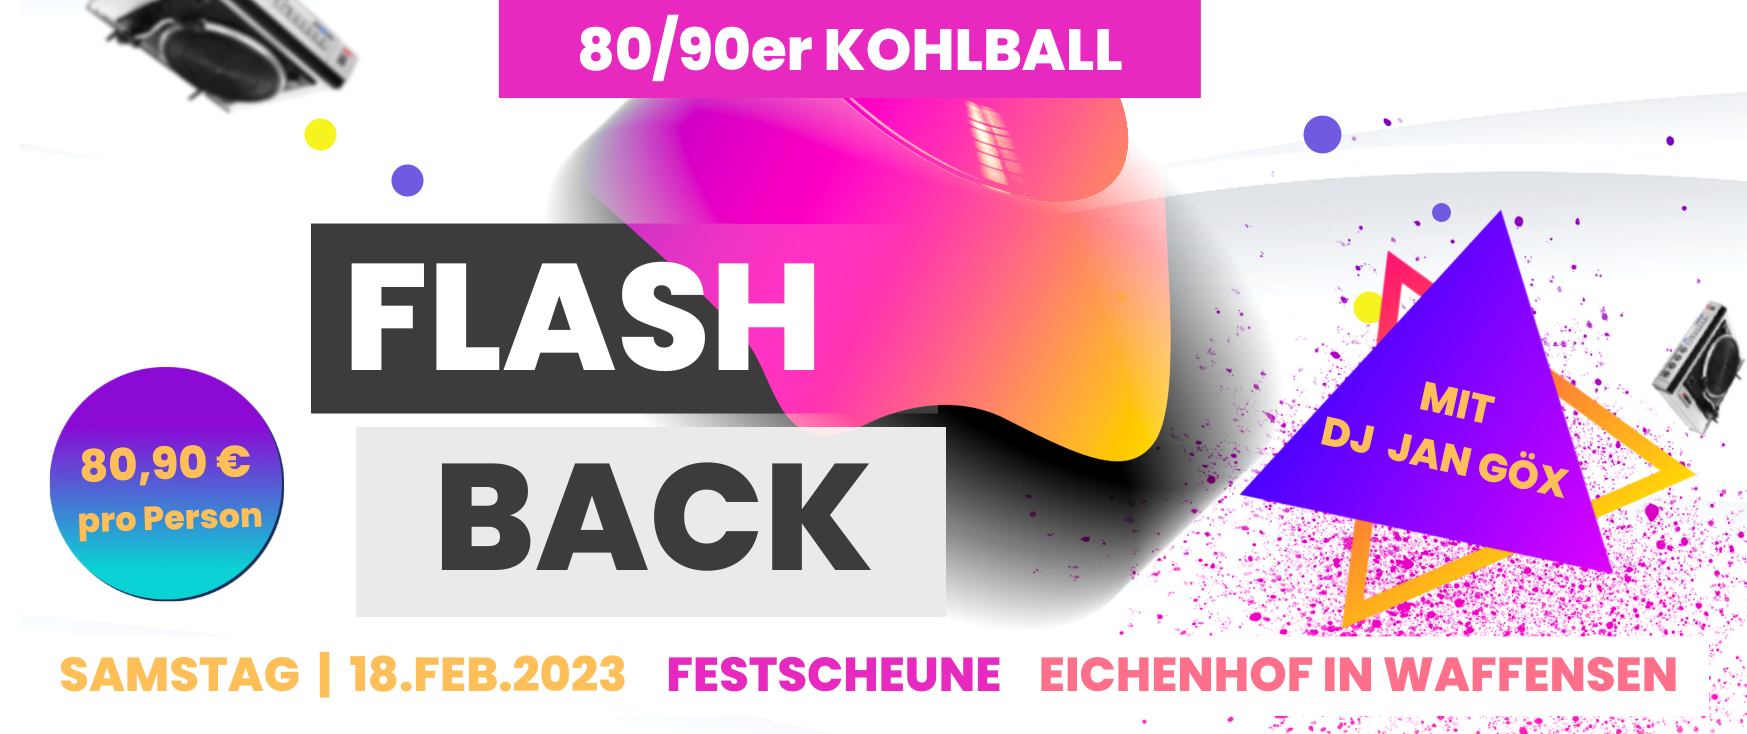 80/90er-Kohlball